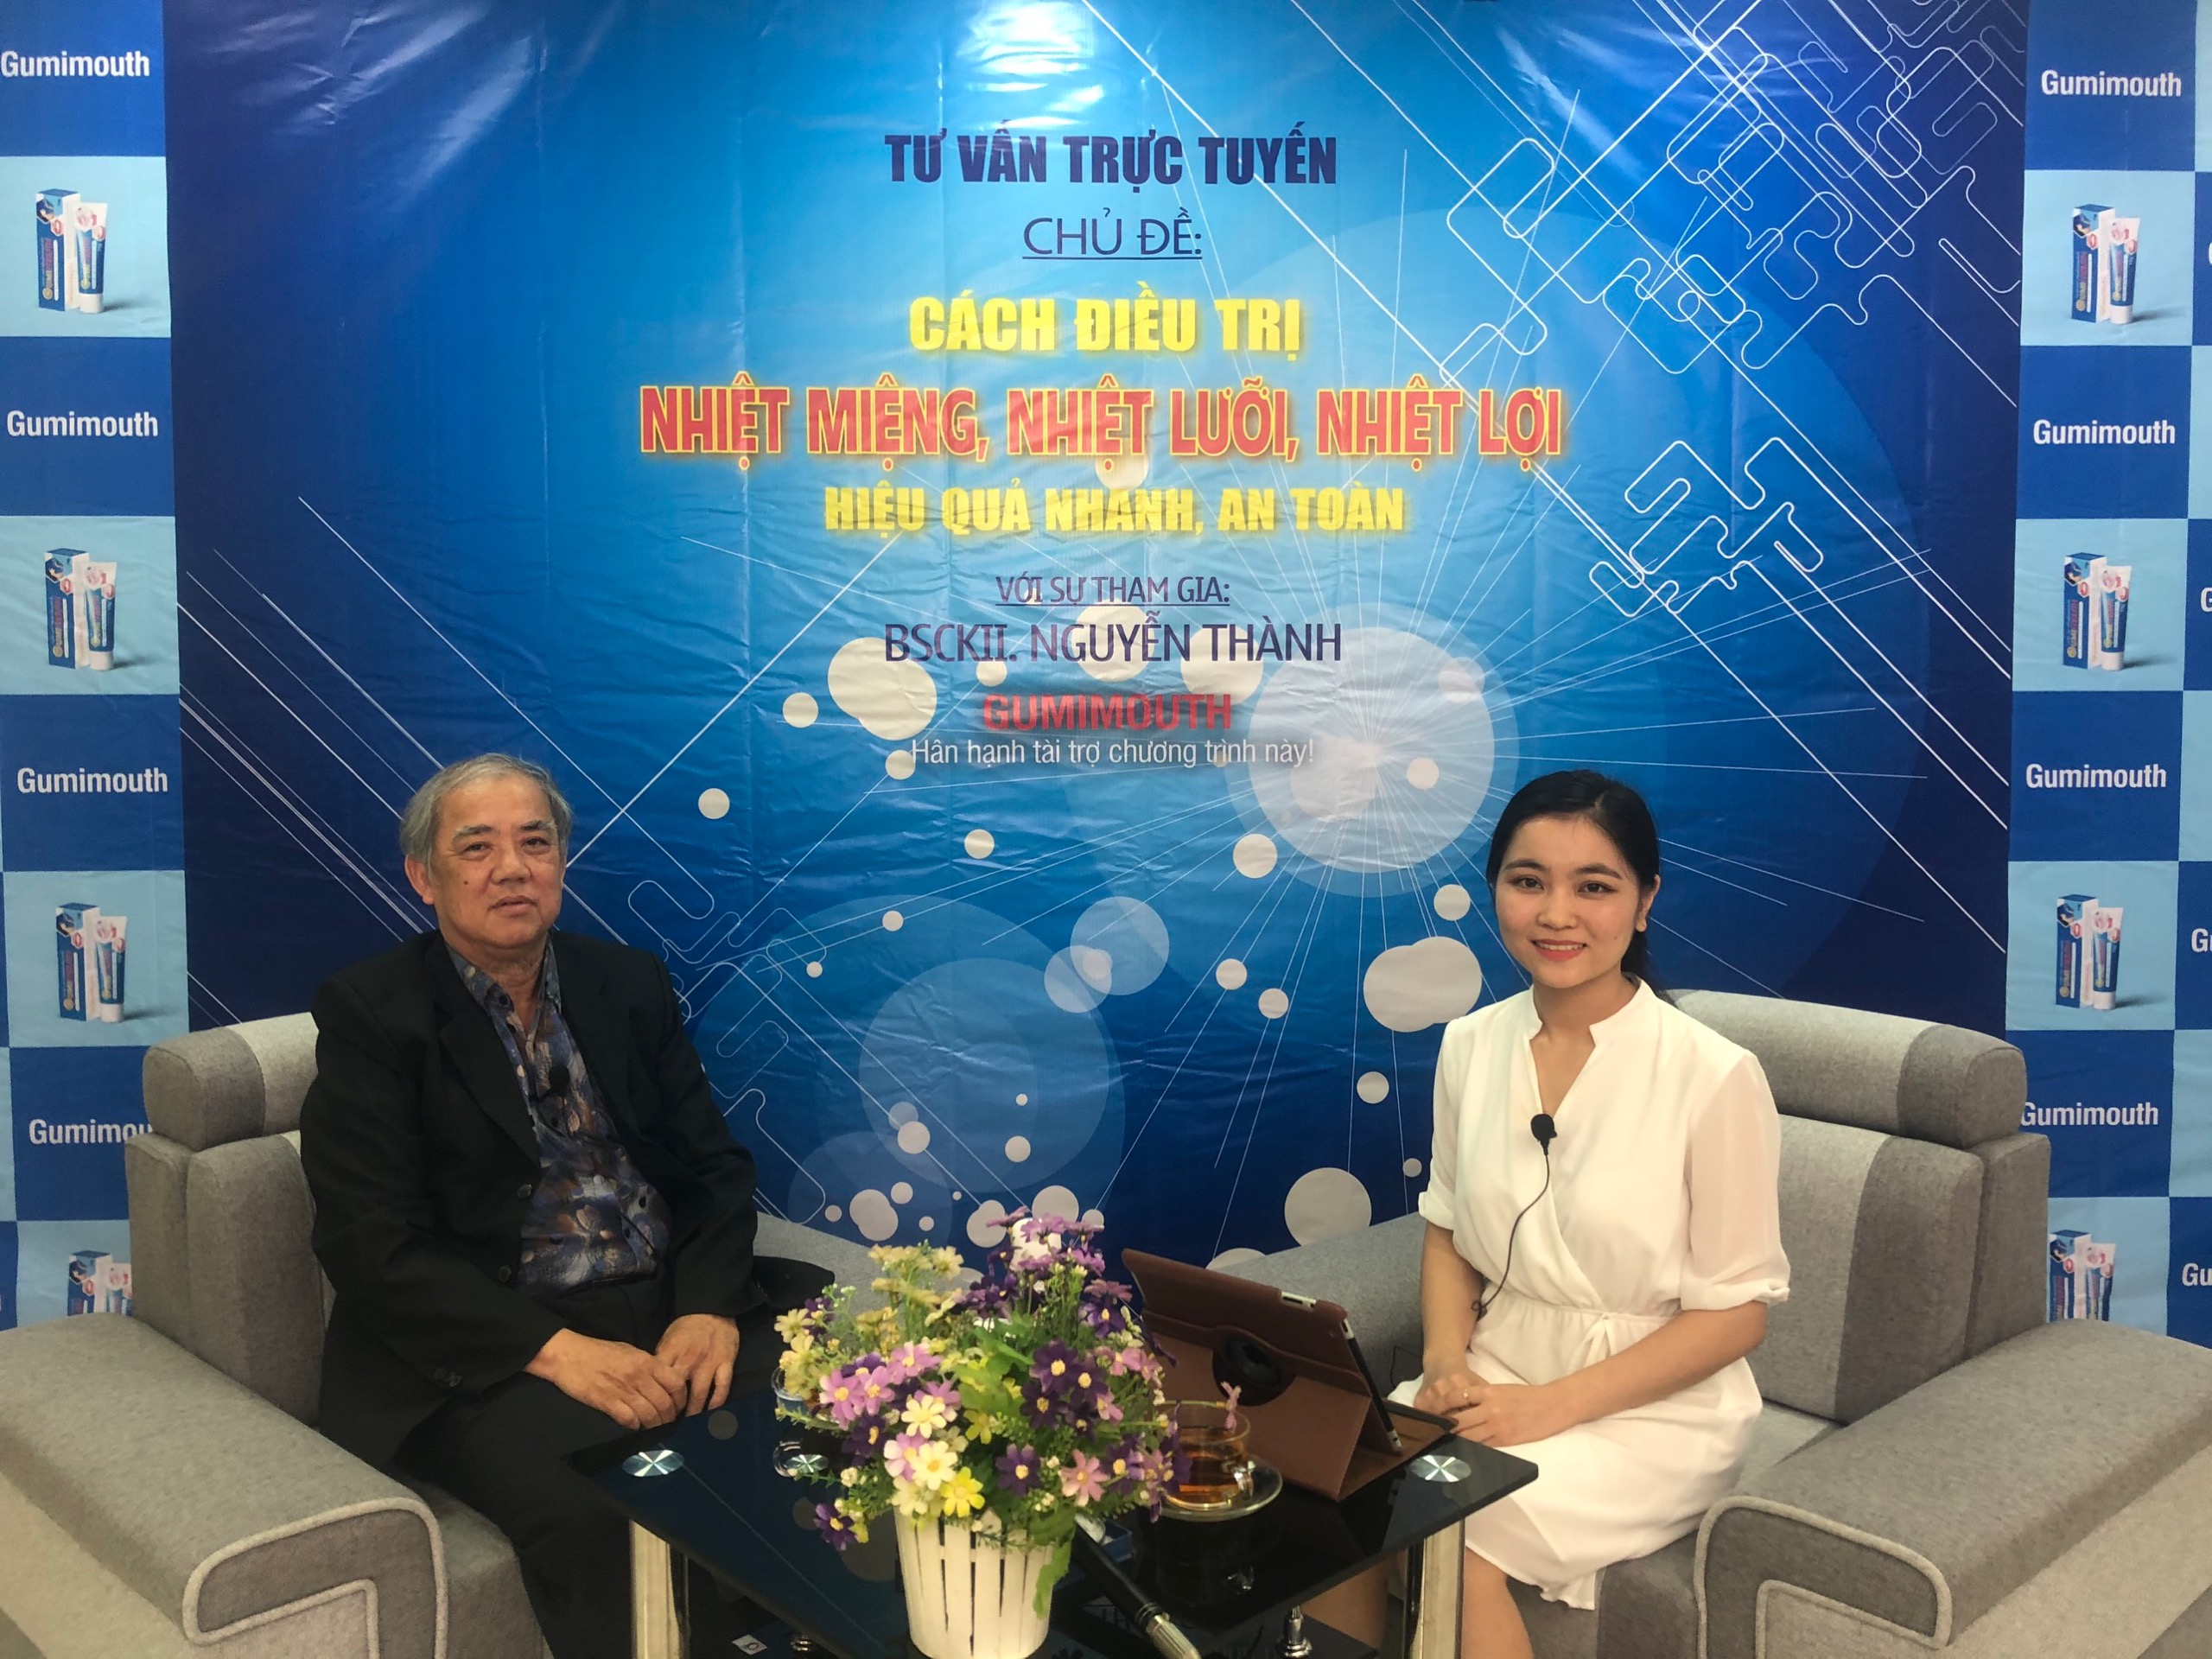 Giao lưu trực tuyến cùng chuyên gia Nguyễn Thành